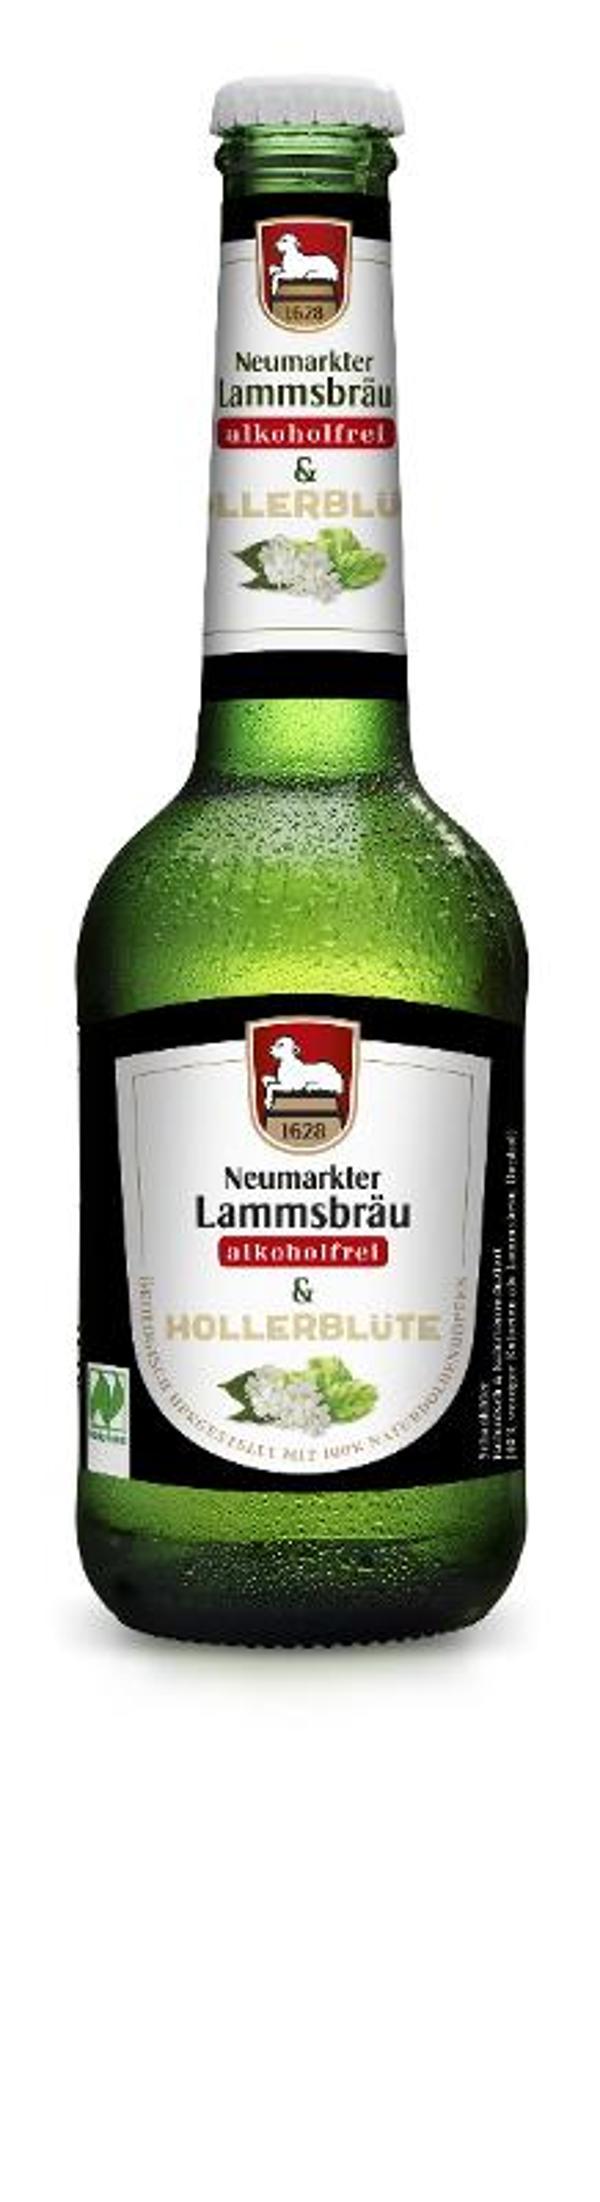 Produktfoto zu Lammsbräu Hollerblüte Alkoholfrei 0,33l Neumarkter Lammsbräu